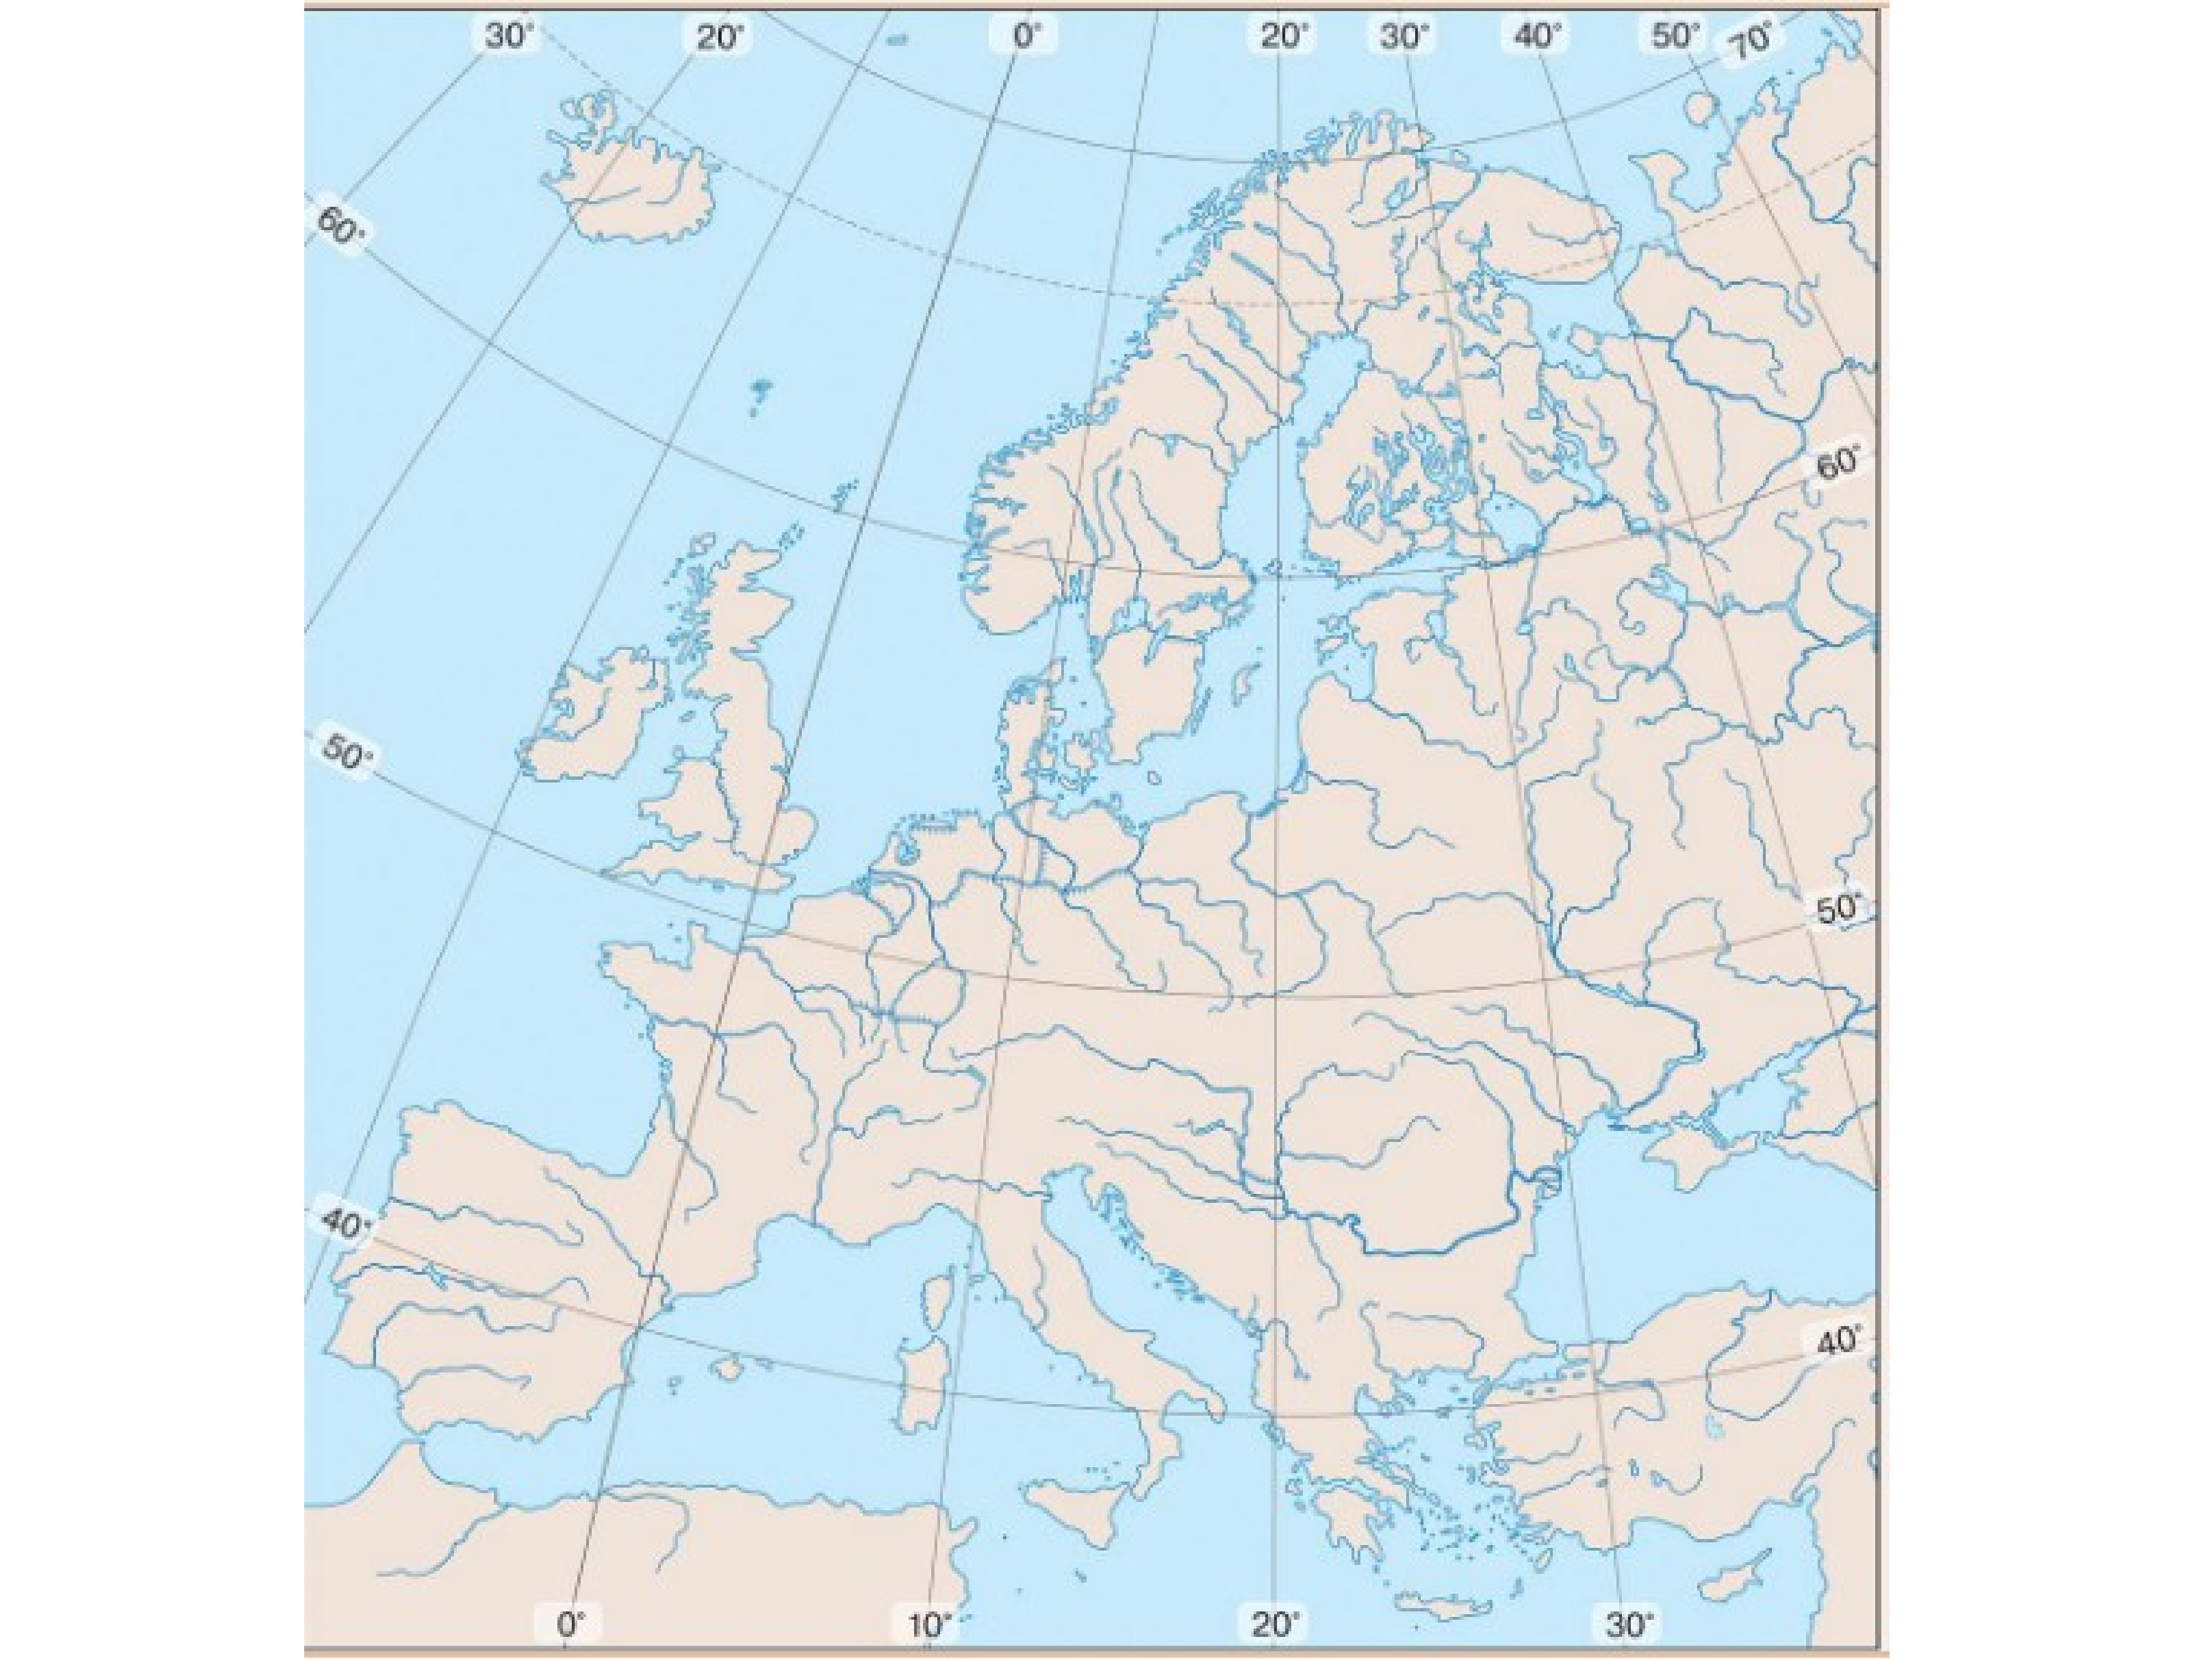 Европа путешествие география